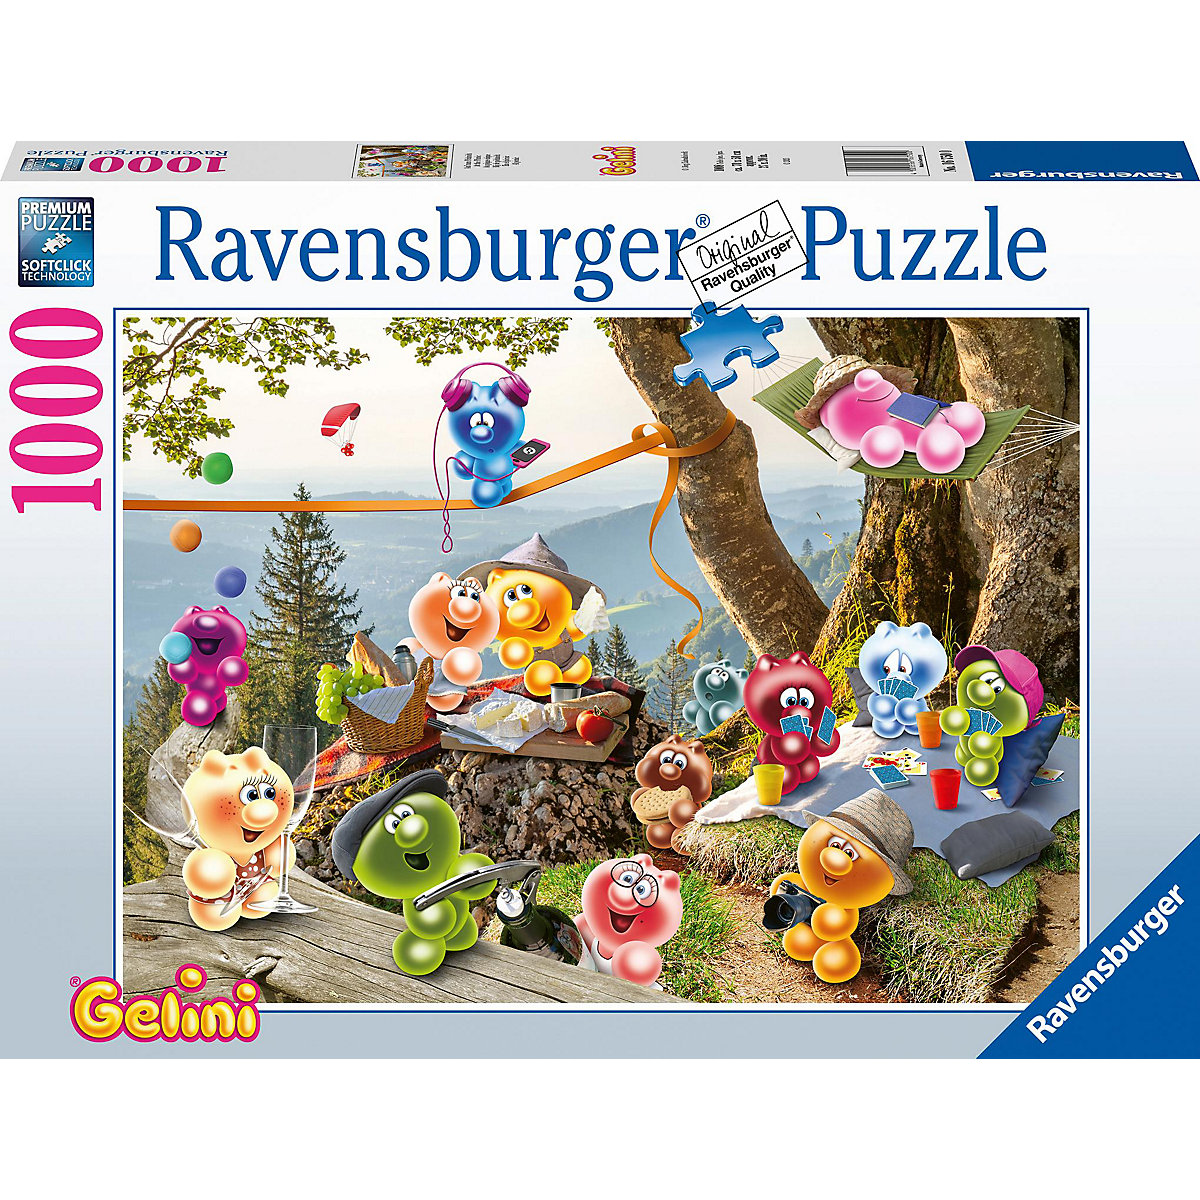 Ravensburger Puzzle Gelini Auf zum Picknick 1.000 Teile